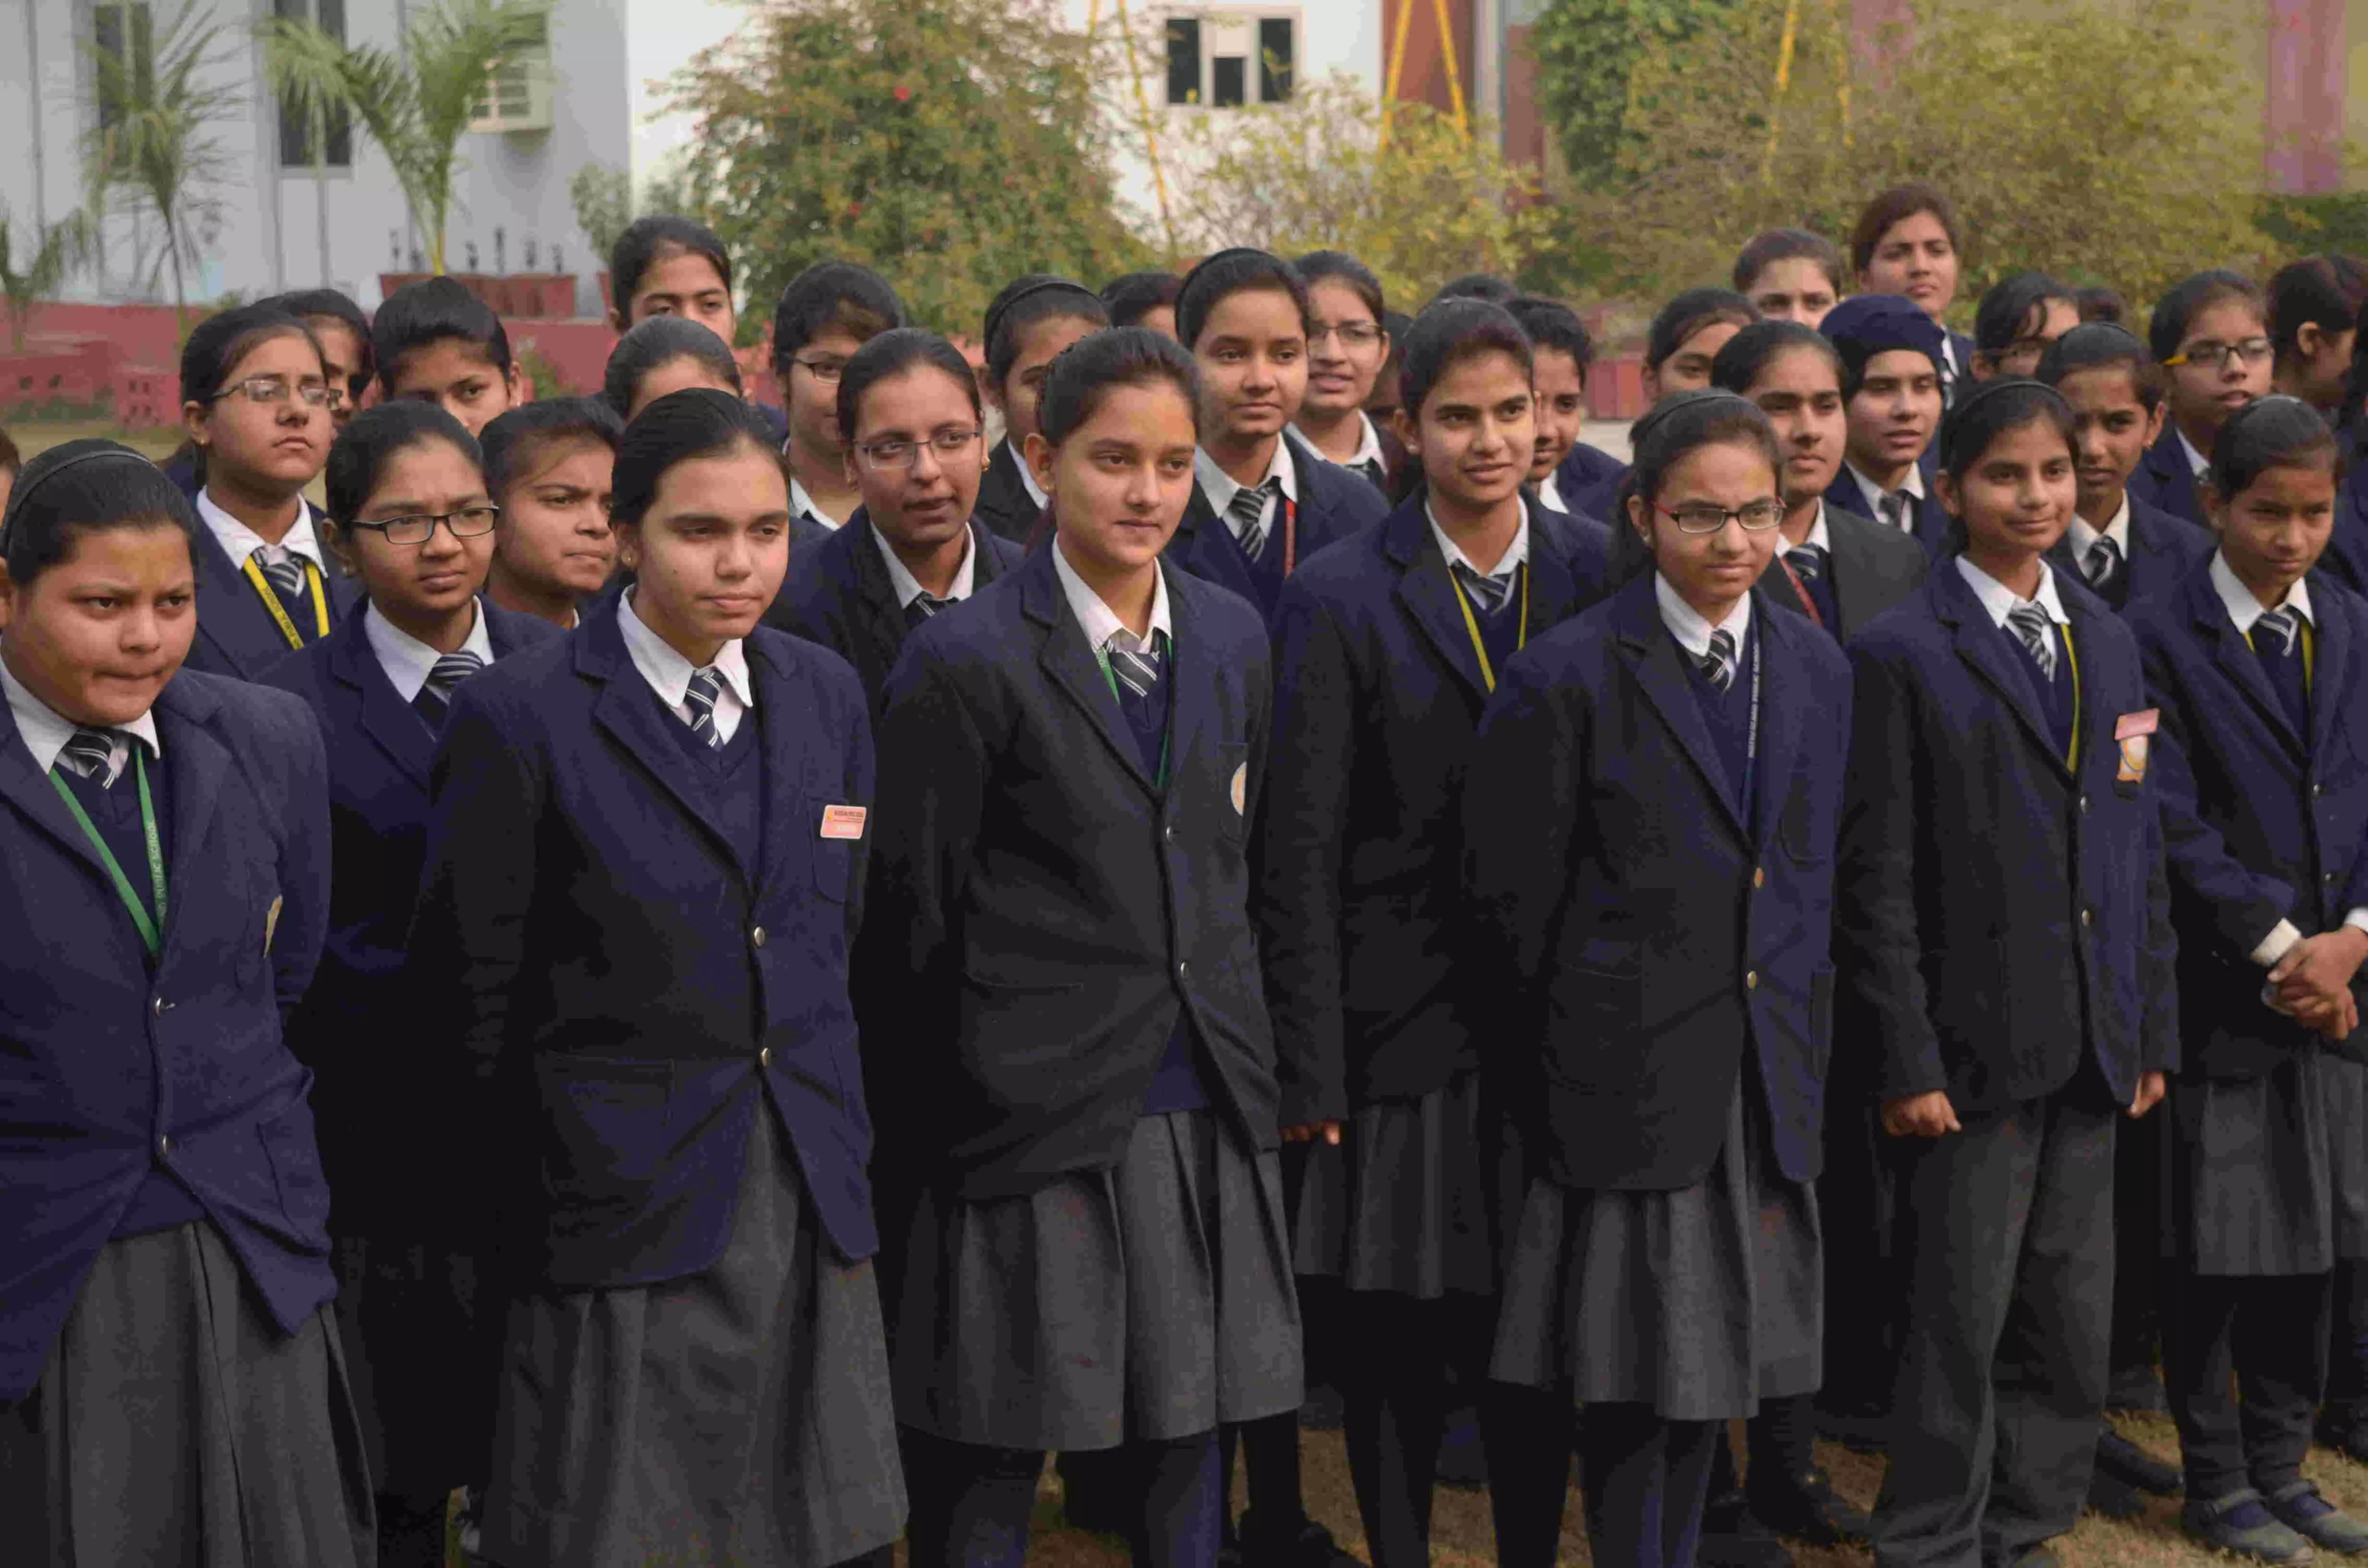 बारहवीं तक के छात्र-छात्राओं के लिए सुनहरा मौका, जीत सकते हैं एक लाख तक का पुरस्कार